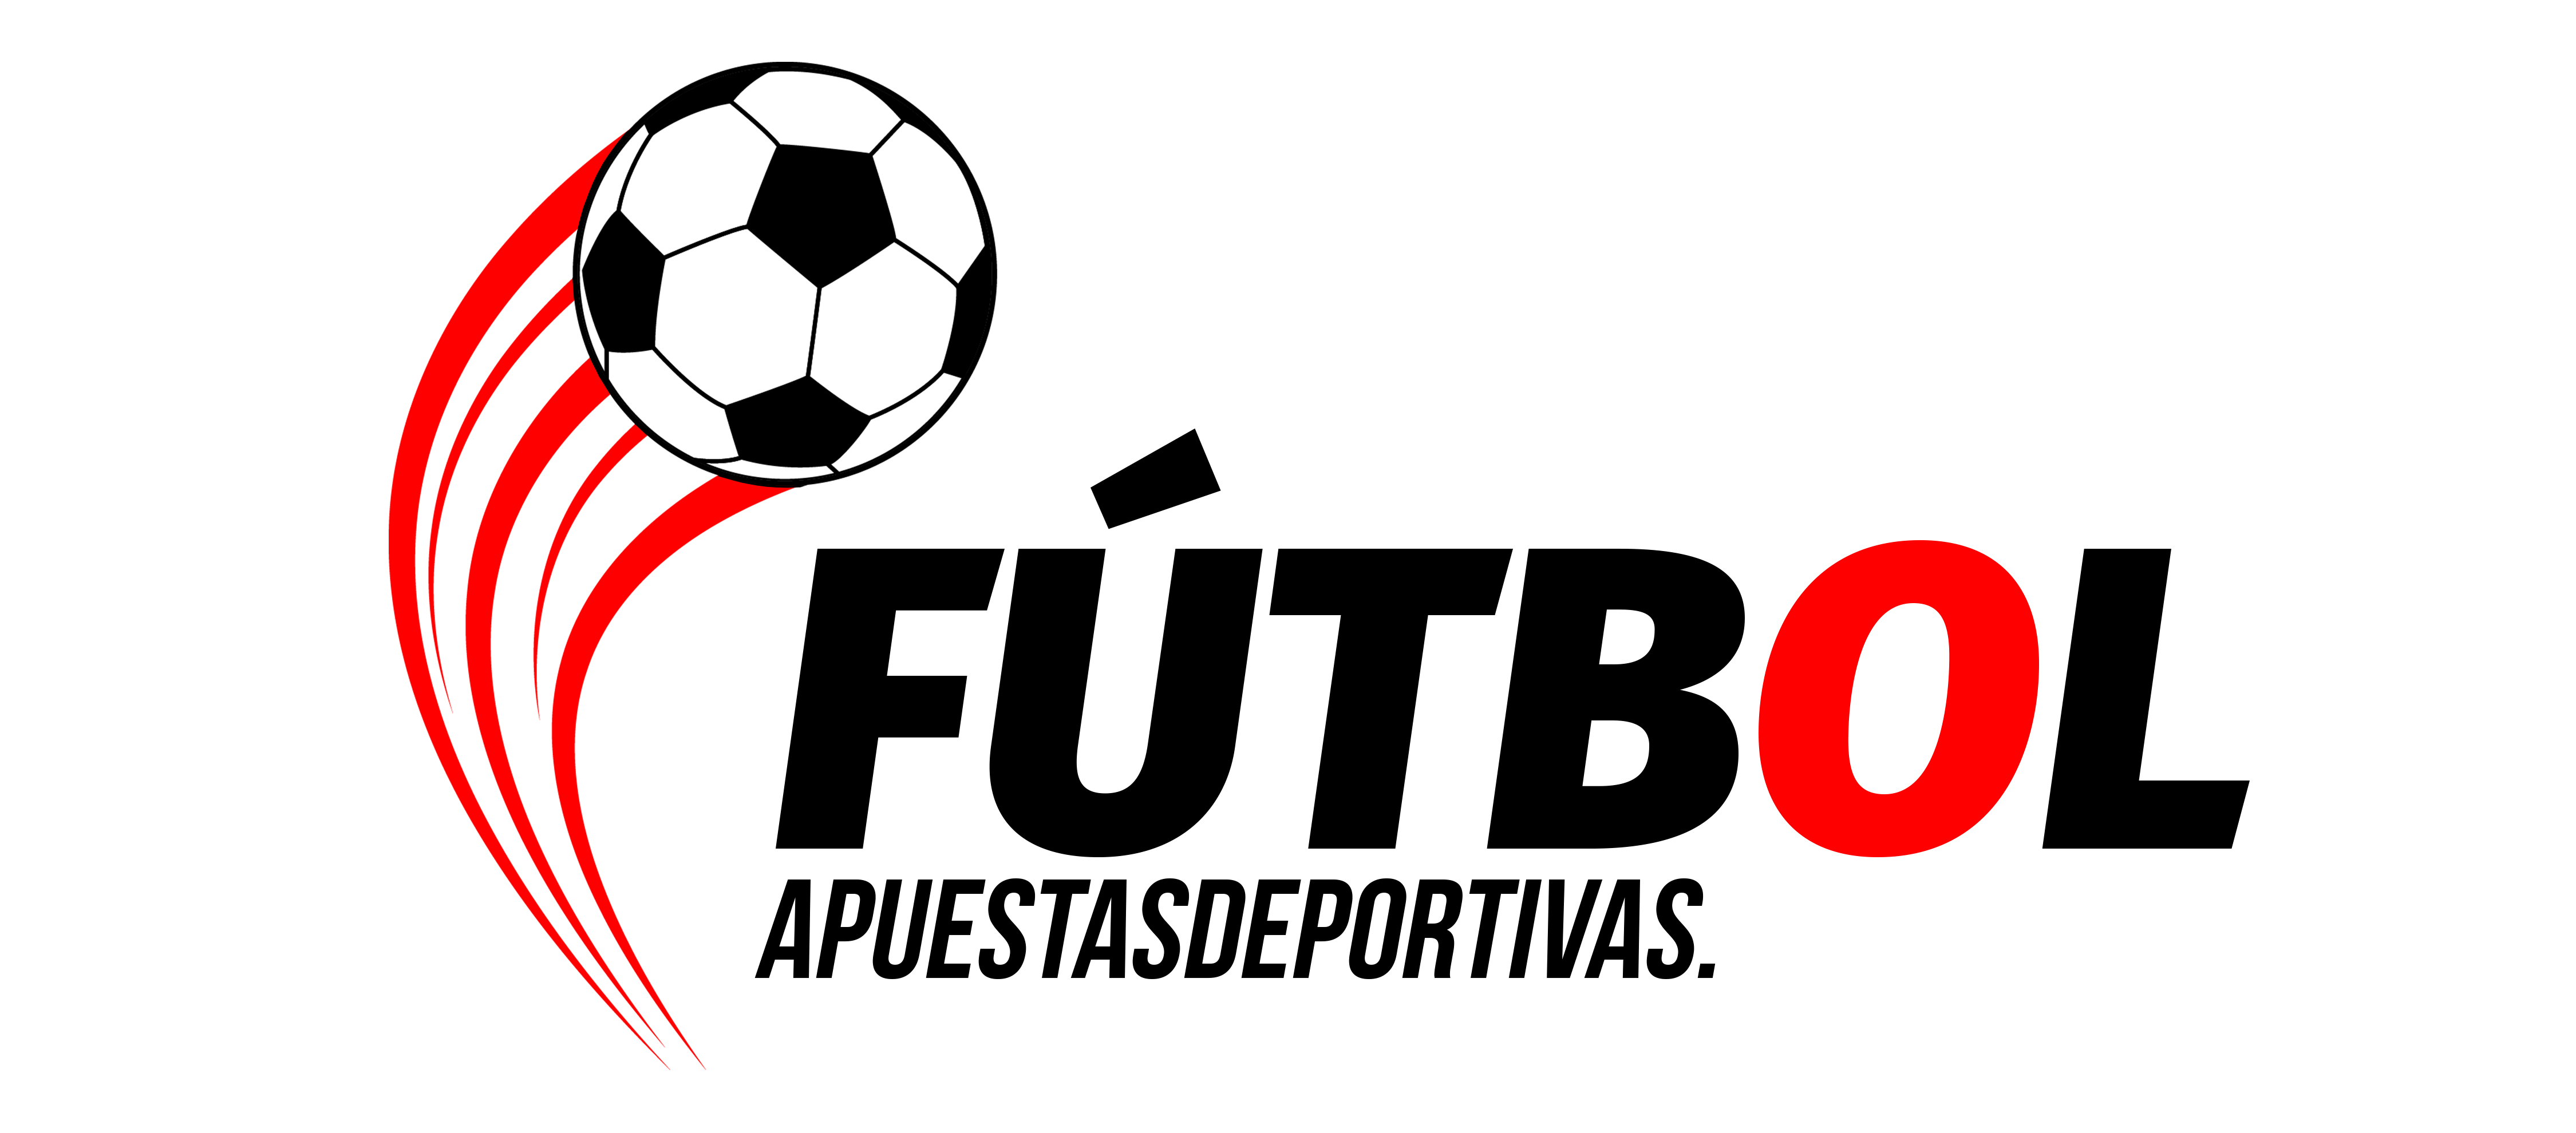 Futbol Logo - Las últimas noticias sobre fútbol y apuestas deportivas 2019!